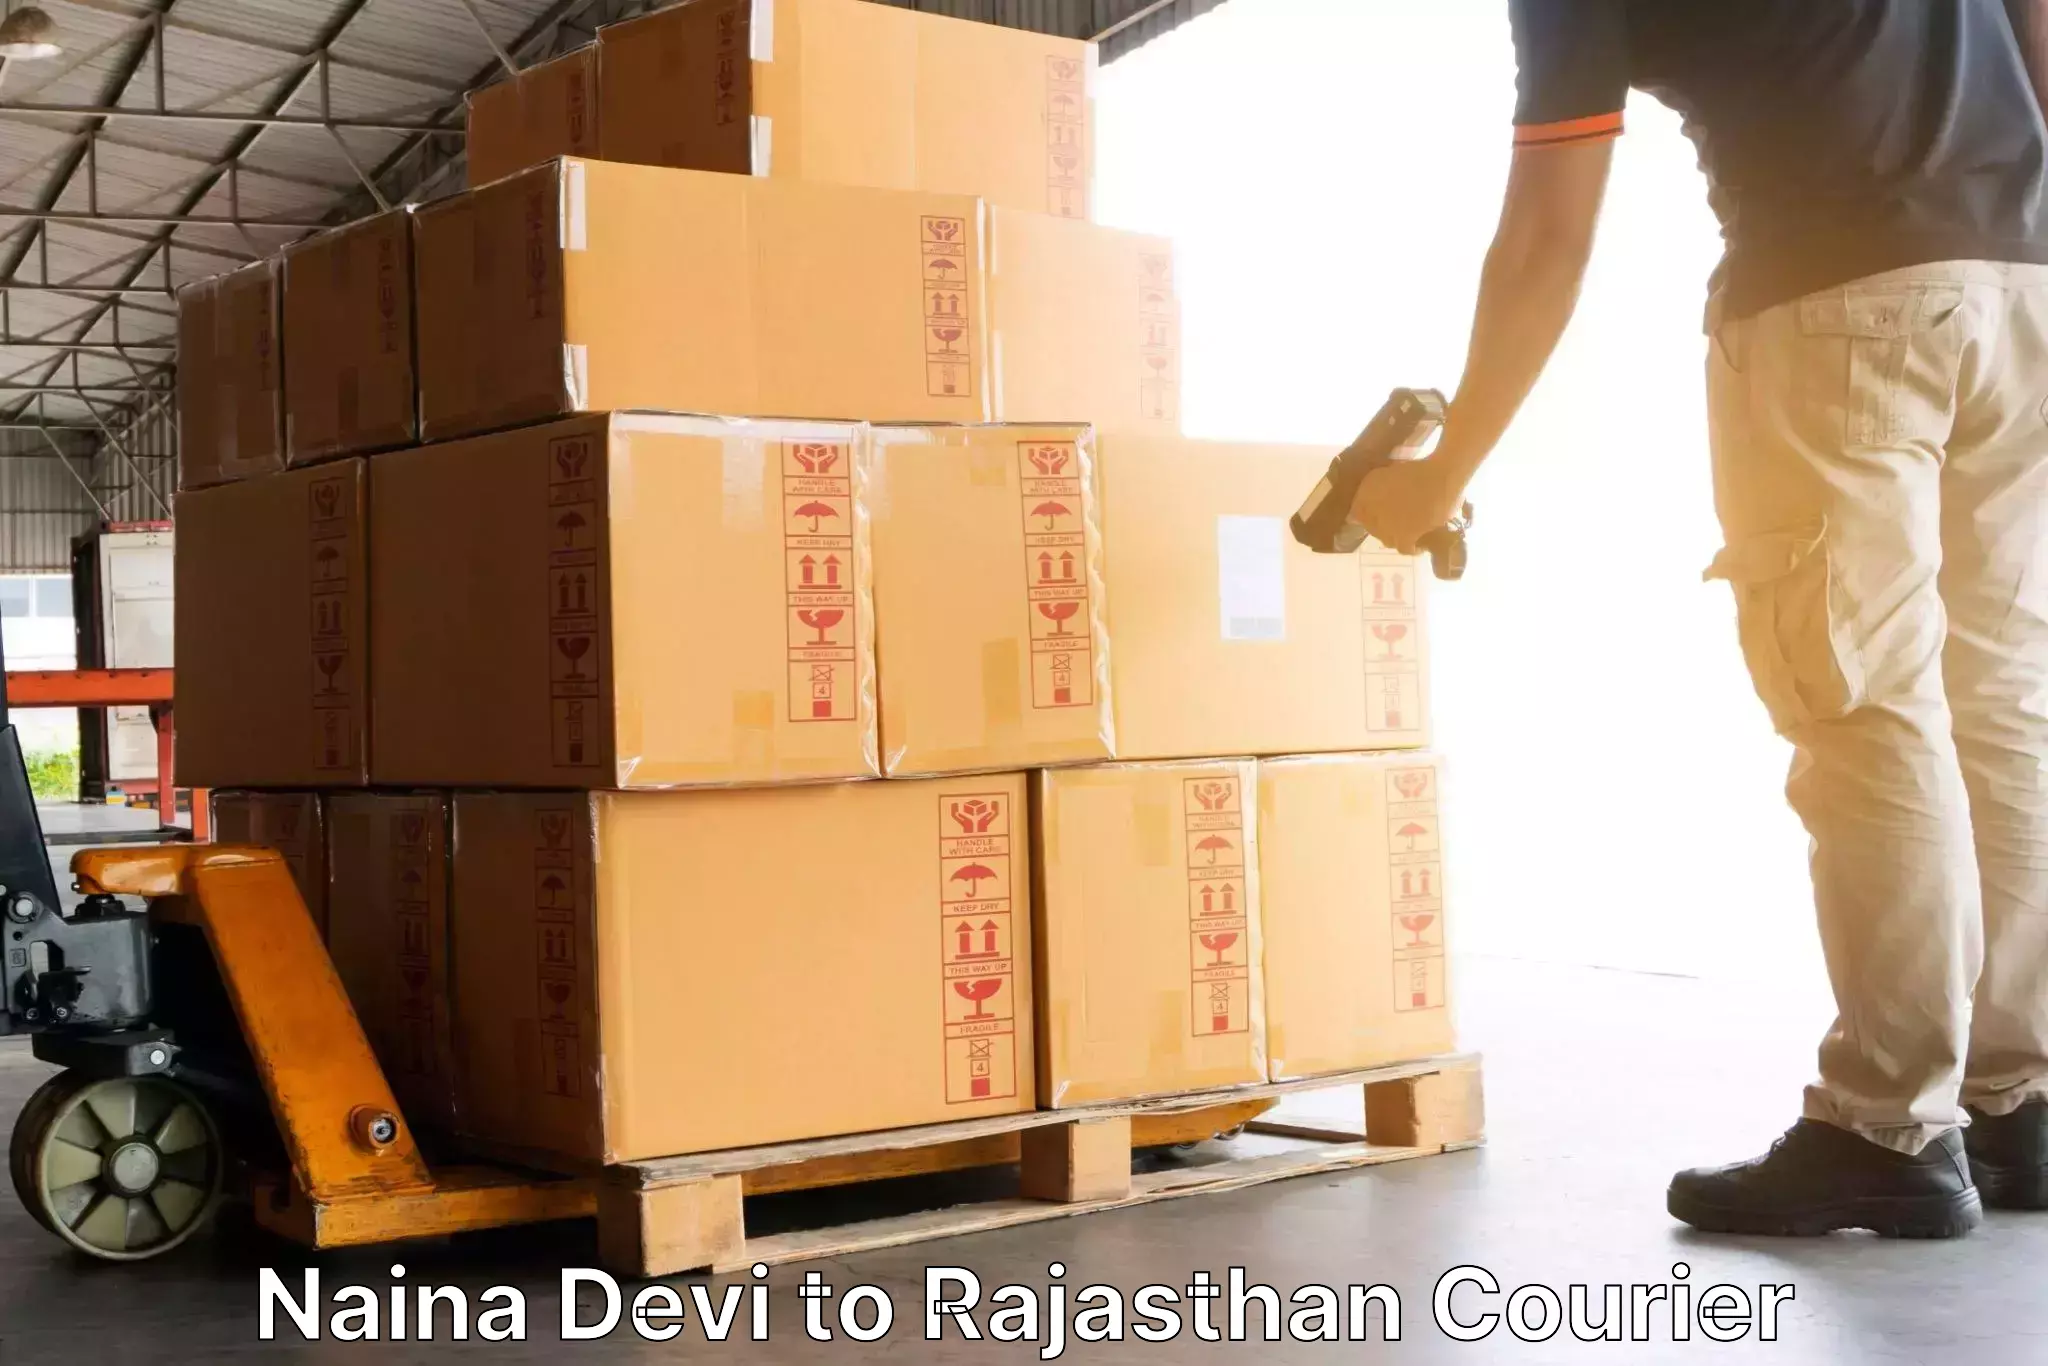 Shipping and handling Naina Devi to Mathania